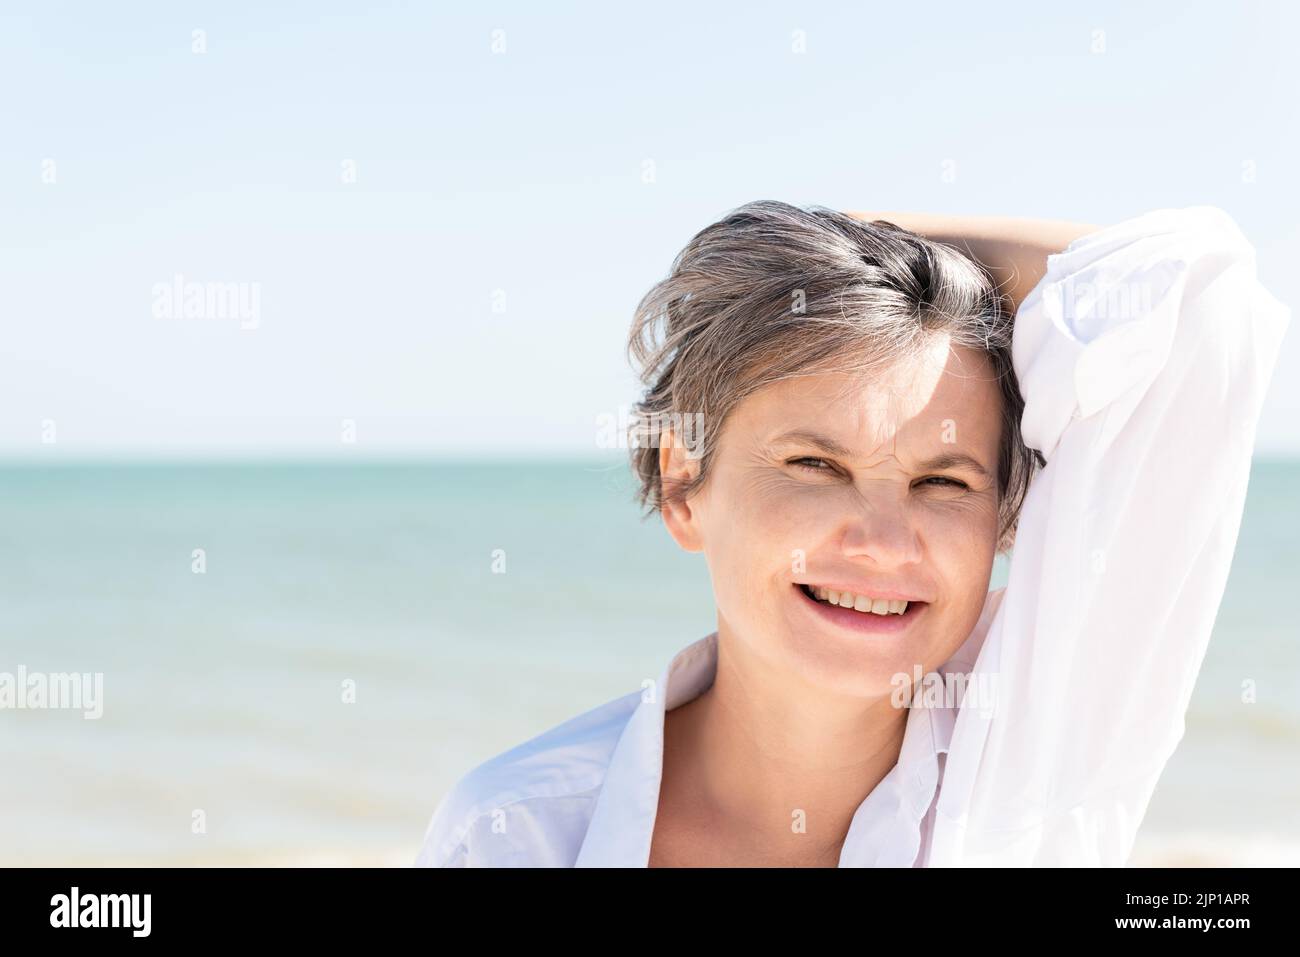 Glücklich lächelnde grauhaarige Frau in einem weißen Männerhemd, die sich mit der Hand gegen das Meer und den blauen Himmel vor der Sonne schützt. Stockfoto